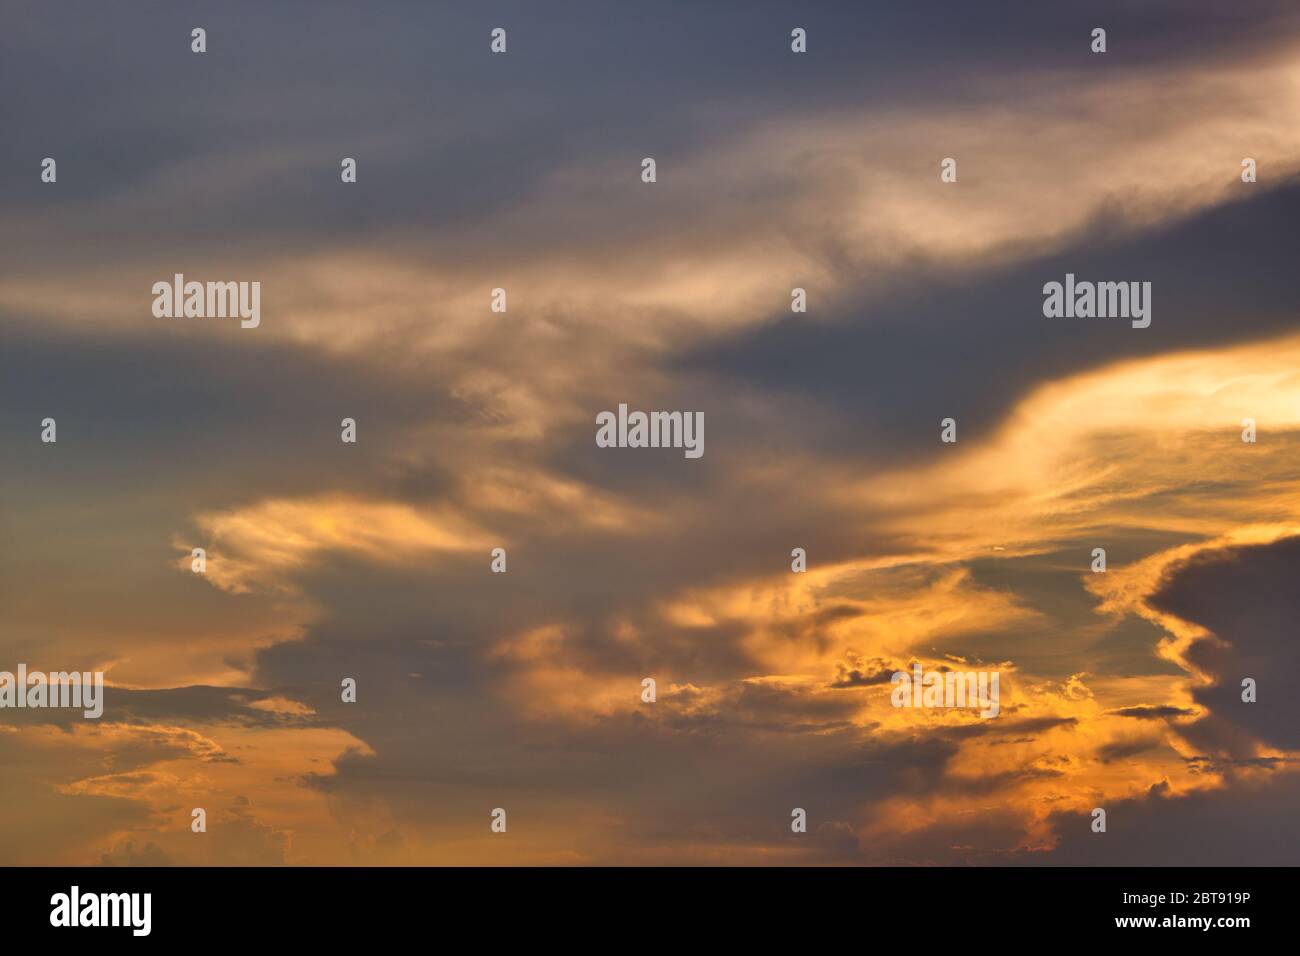 Cette photo unique montre un ciel de coucher de soleil rouge et flamboyant avec une structure de nuages. La photo a été prise à Hua Hin en Thaïlande! Banque D'Images